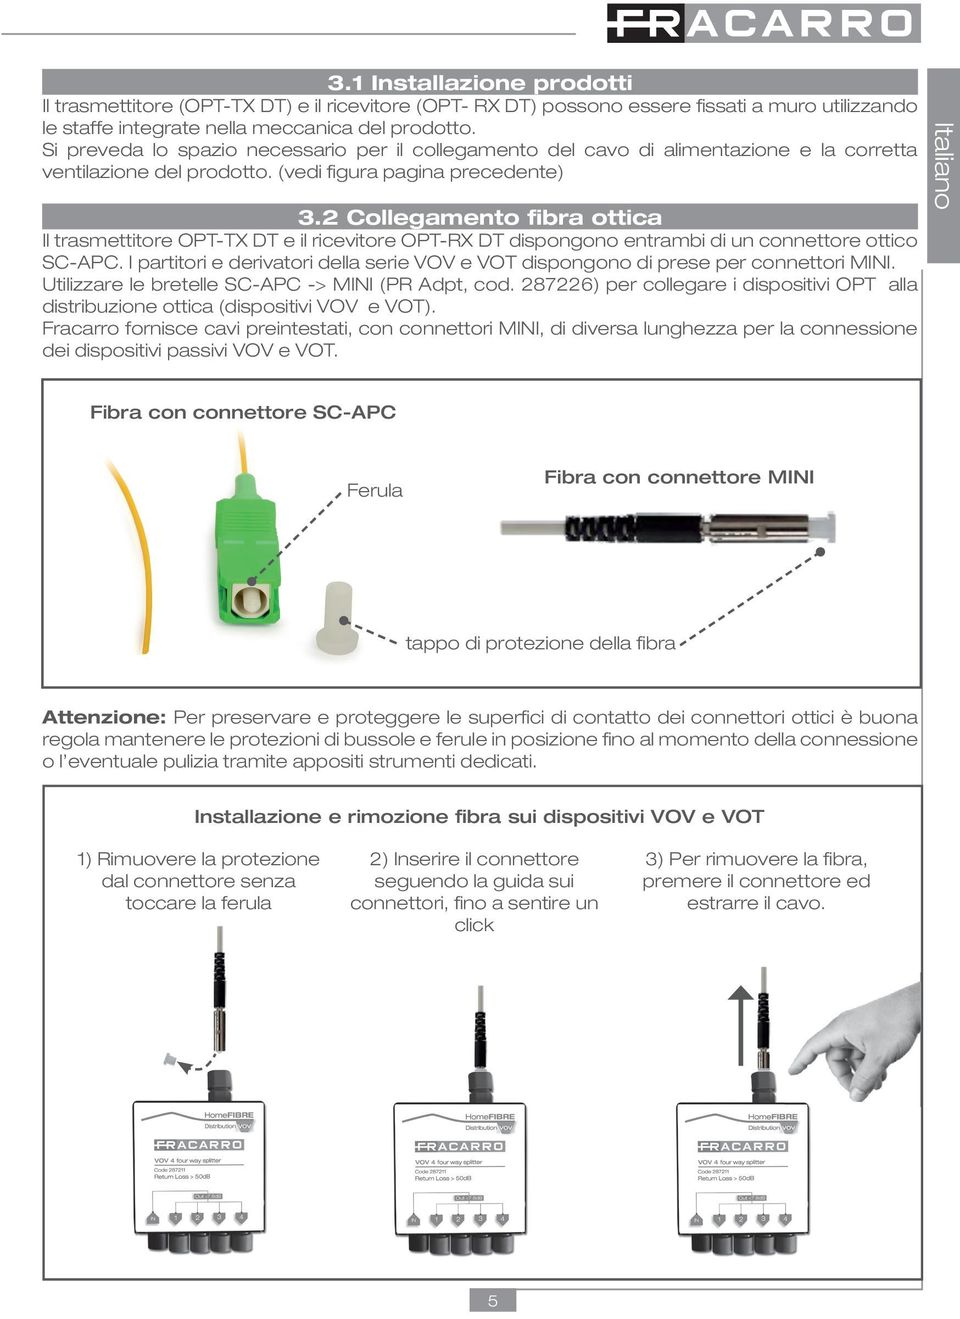 2 Collegamento fibra ottica Il trasmettitore OPT-TX DT e il ricevitore dispongono entrambi di un connettore ottico SC-APC.